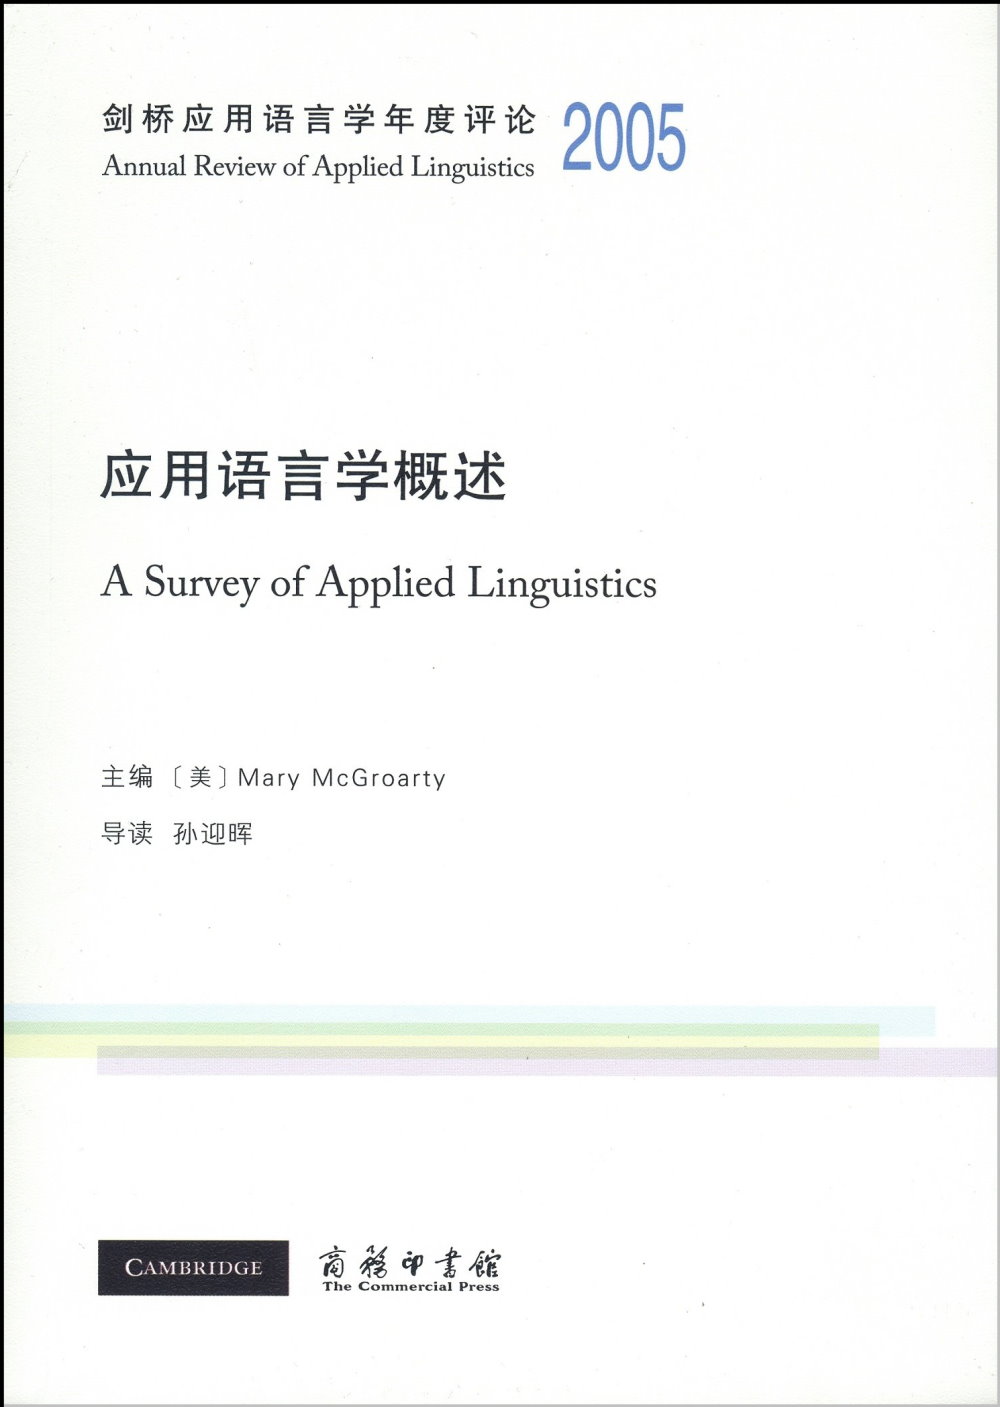 劍橋應用語言學年度評論2005·應用語言學概述